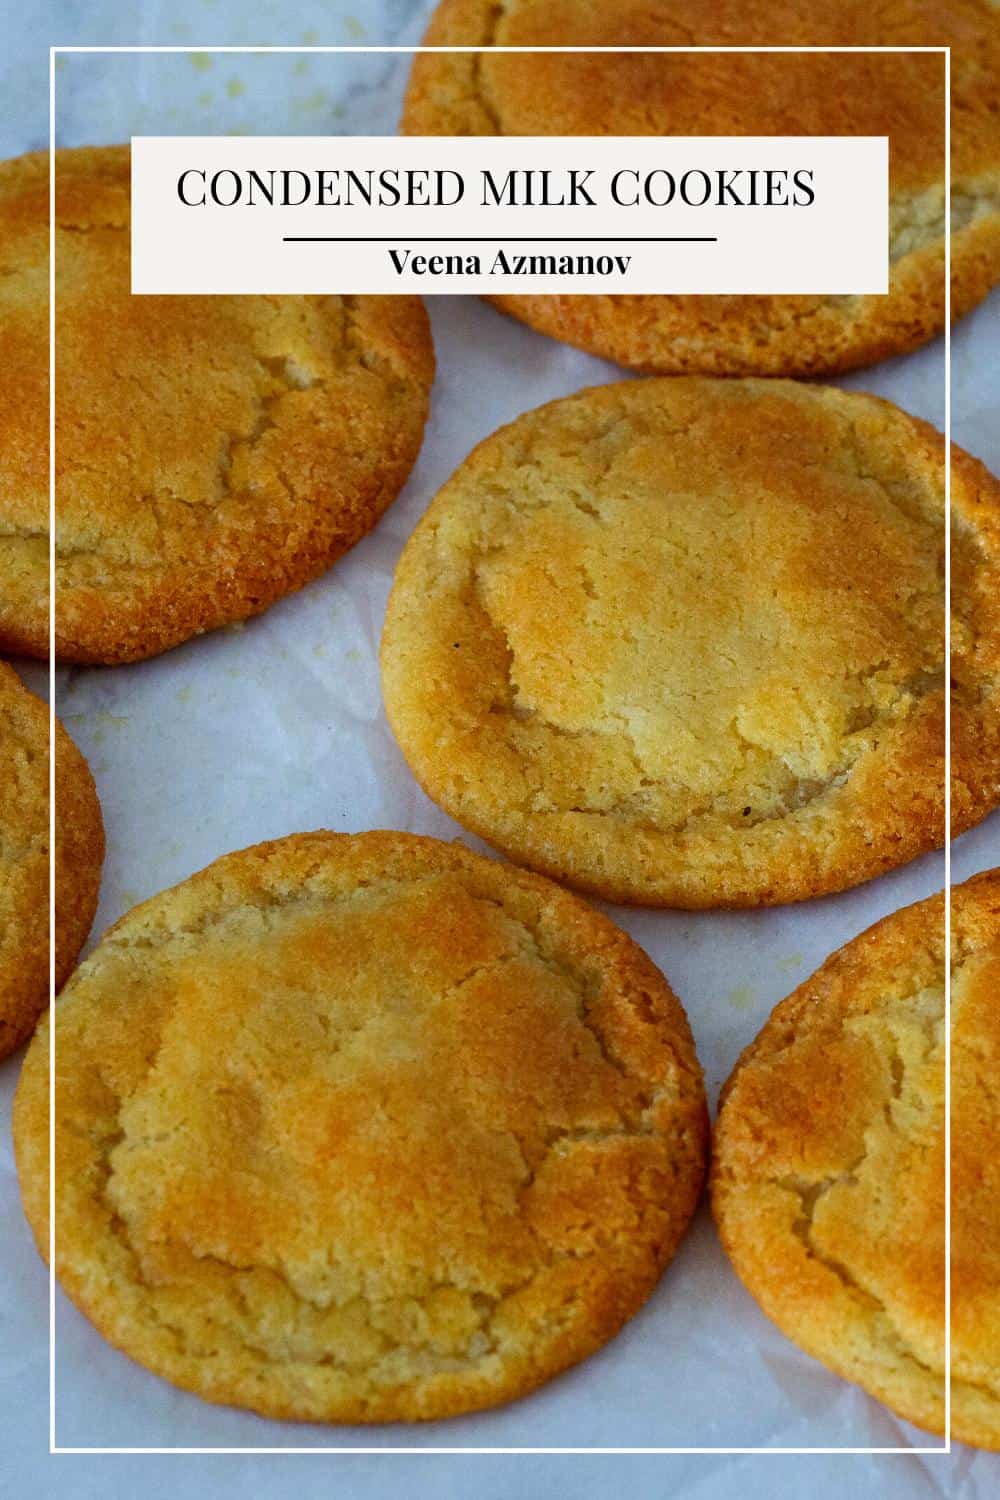 https://veenaazmanov.com/wp-content/uploads/2020/05/Condensed-Milk-Cookies-2.jpg